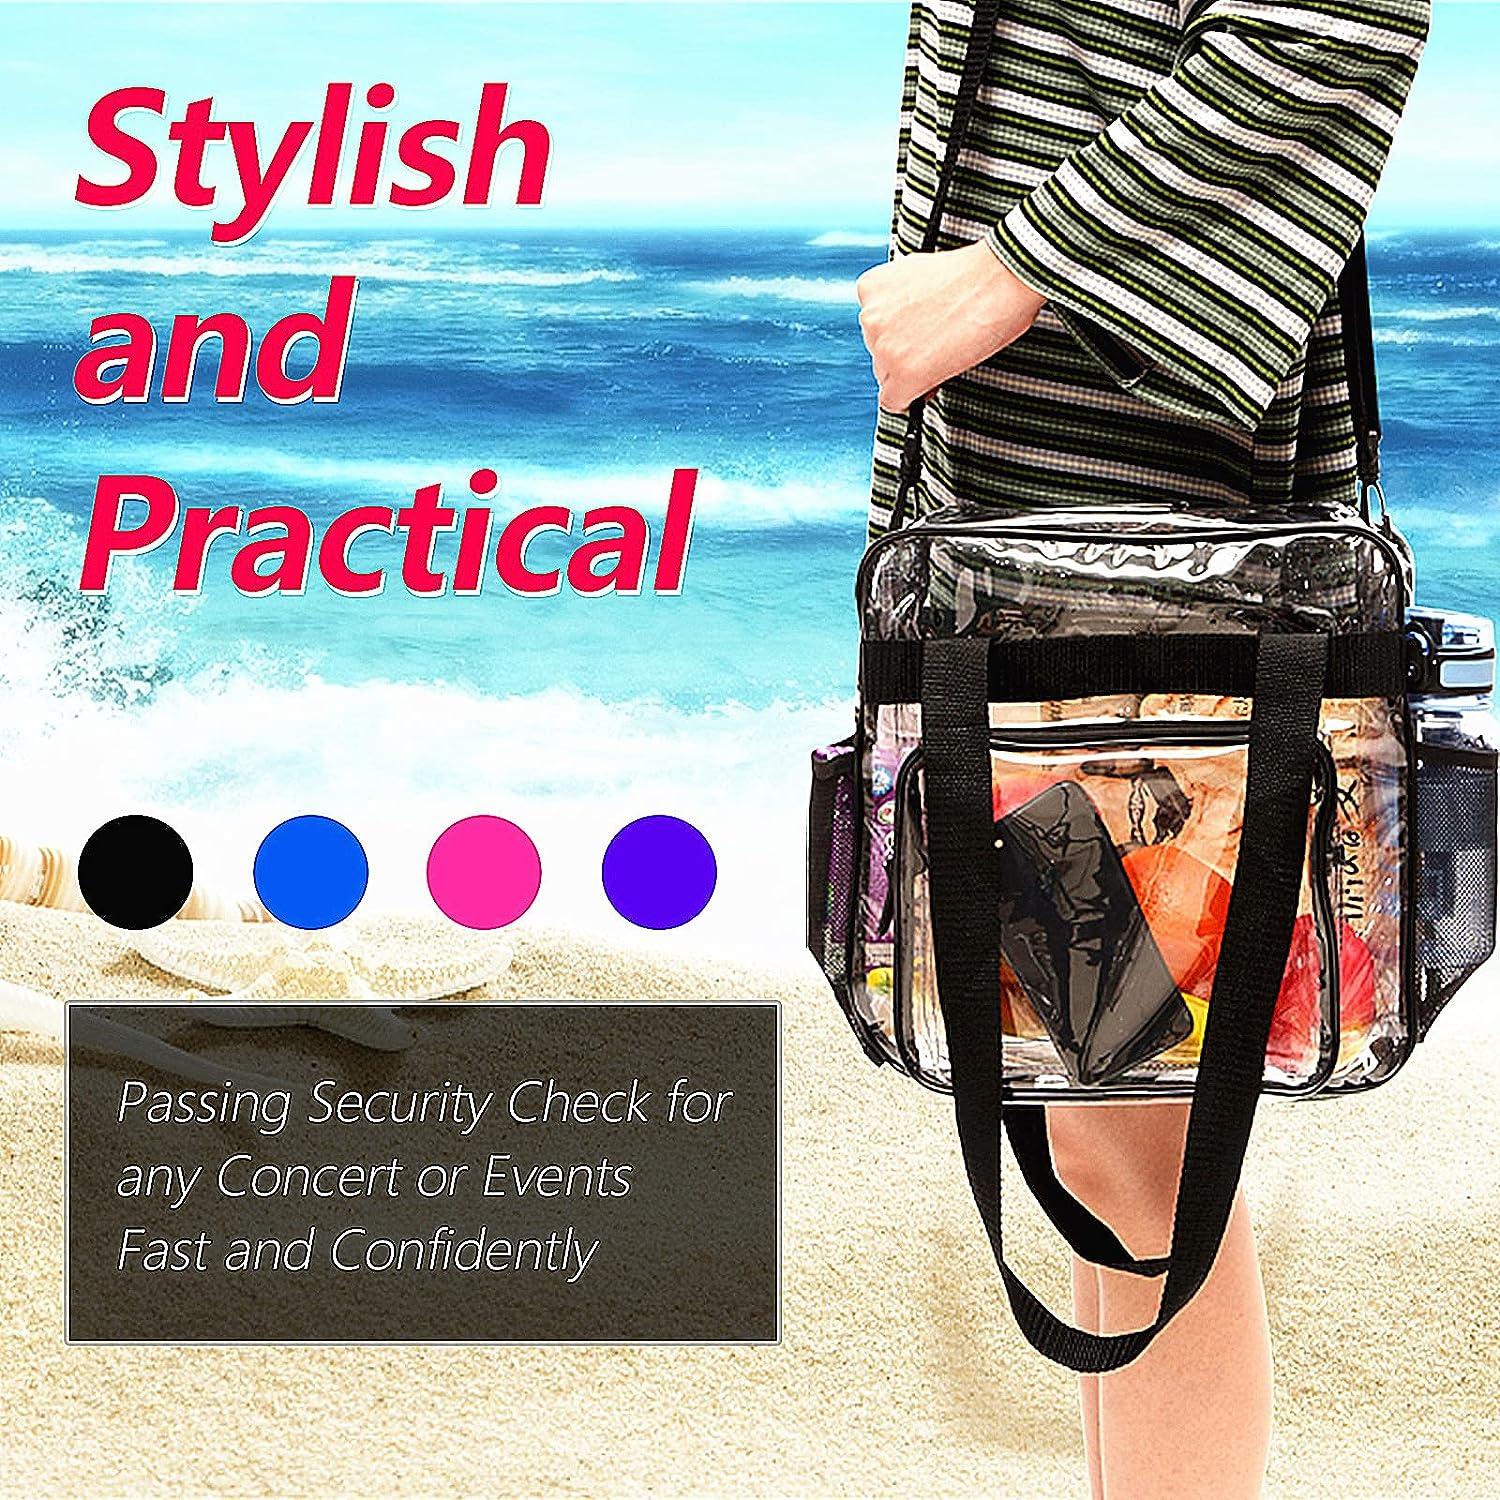 Shoulder strap purse w/zipper closure black medium size bag